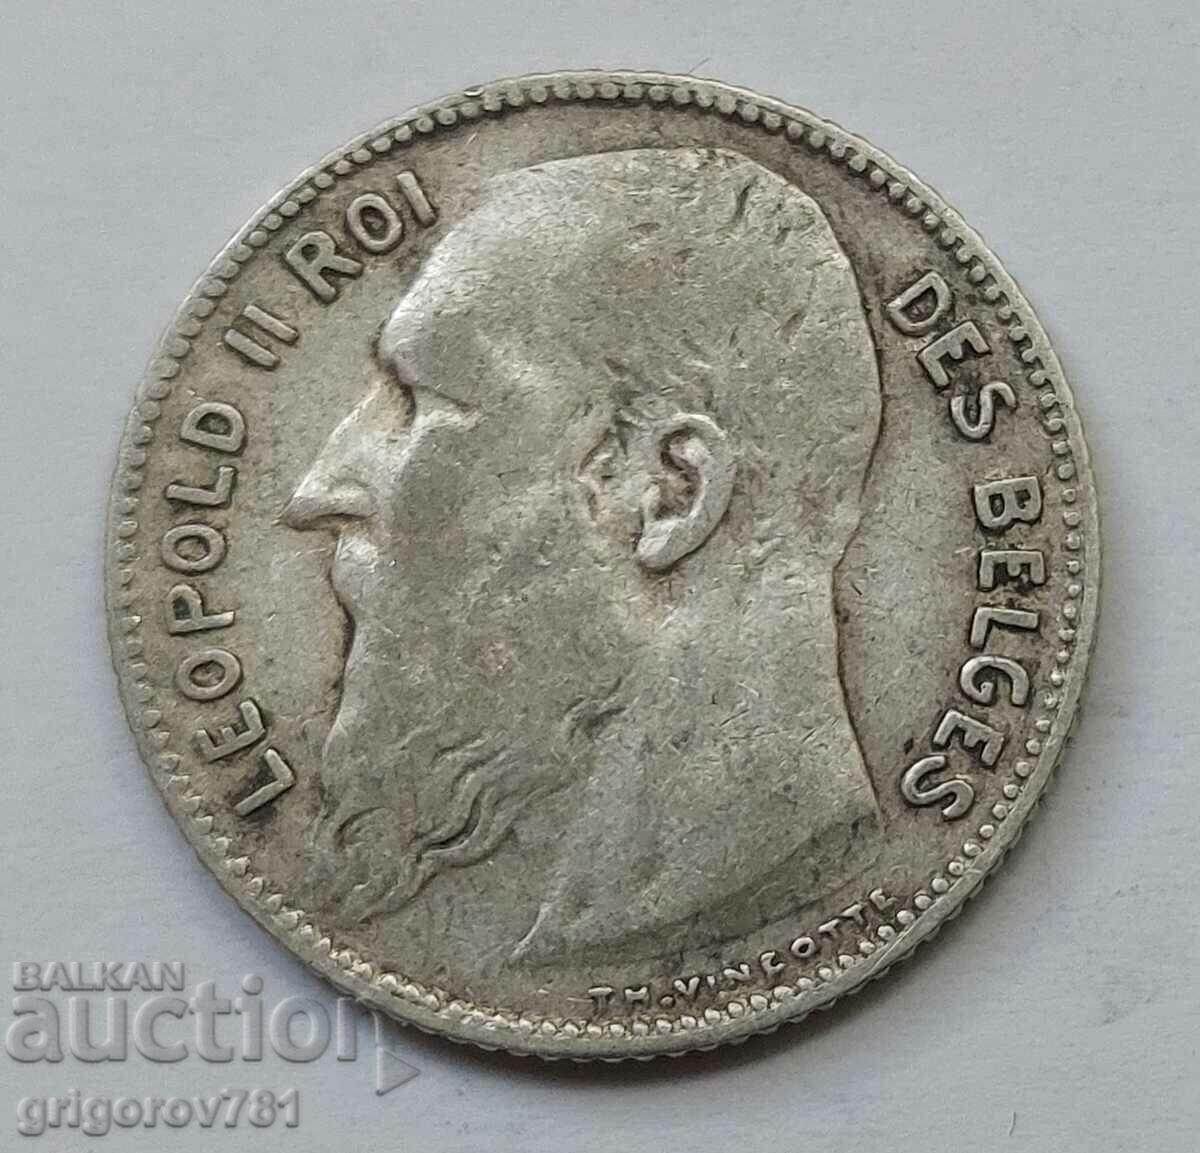 1 franc silver Belgium 1909 - silver coin #68